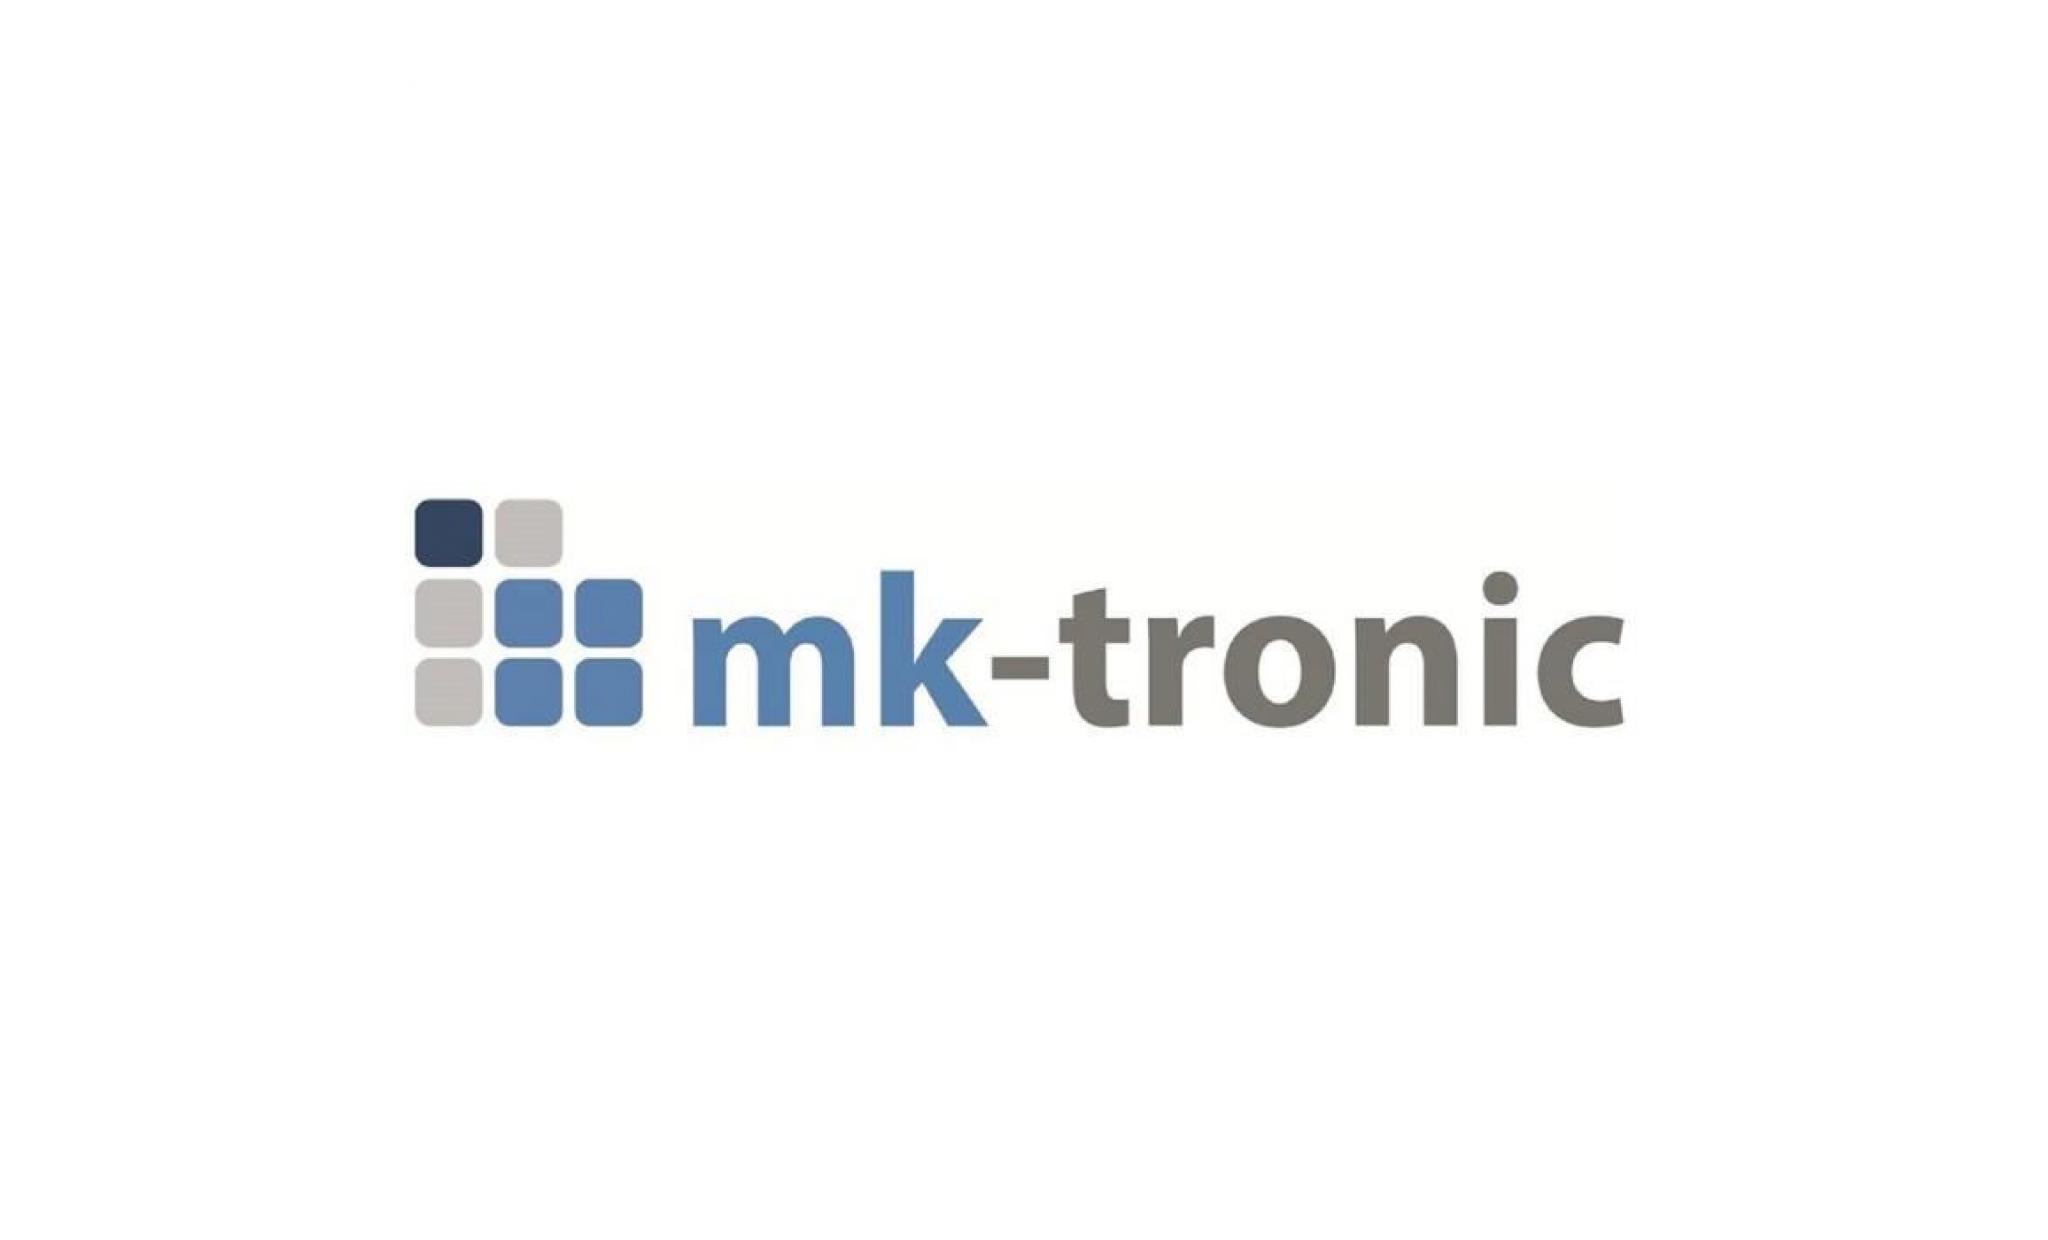 contrôle  des changes ouverture  de session m g2  de elco klöckner technologie  de chauffage numéro d'article 12003450 de mk tronic